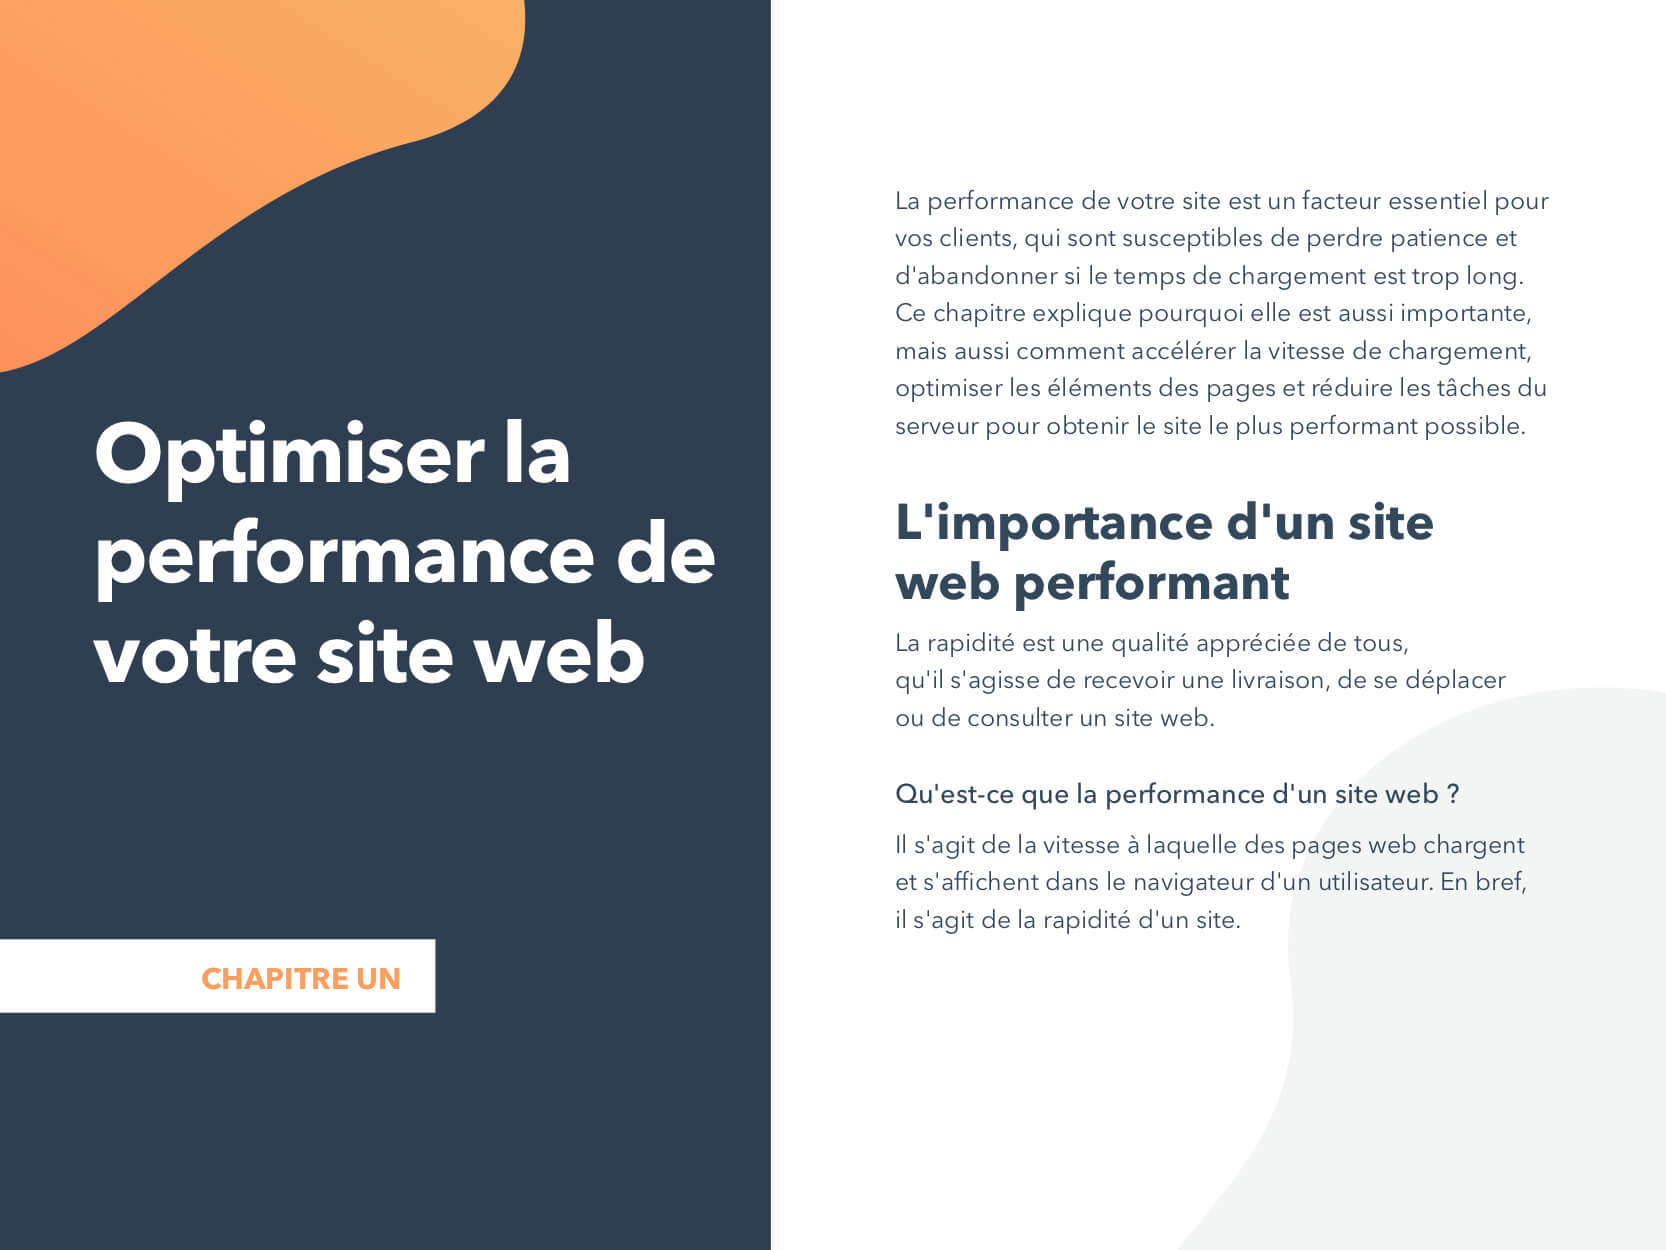 Optimiser la performance de votre site web ch1 